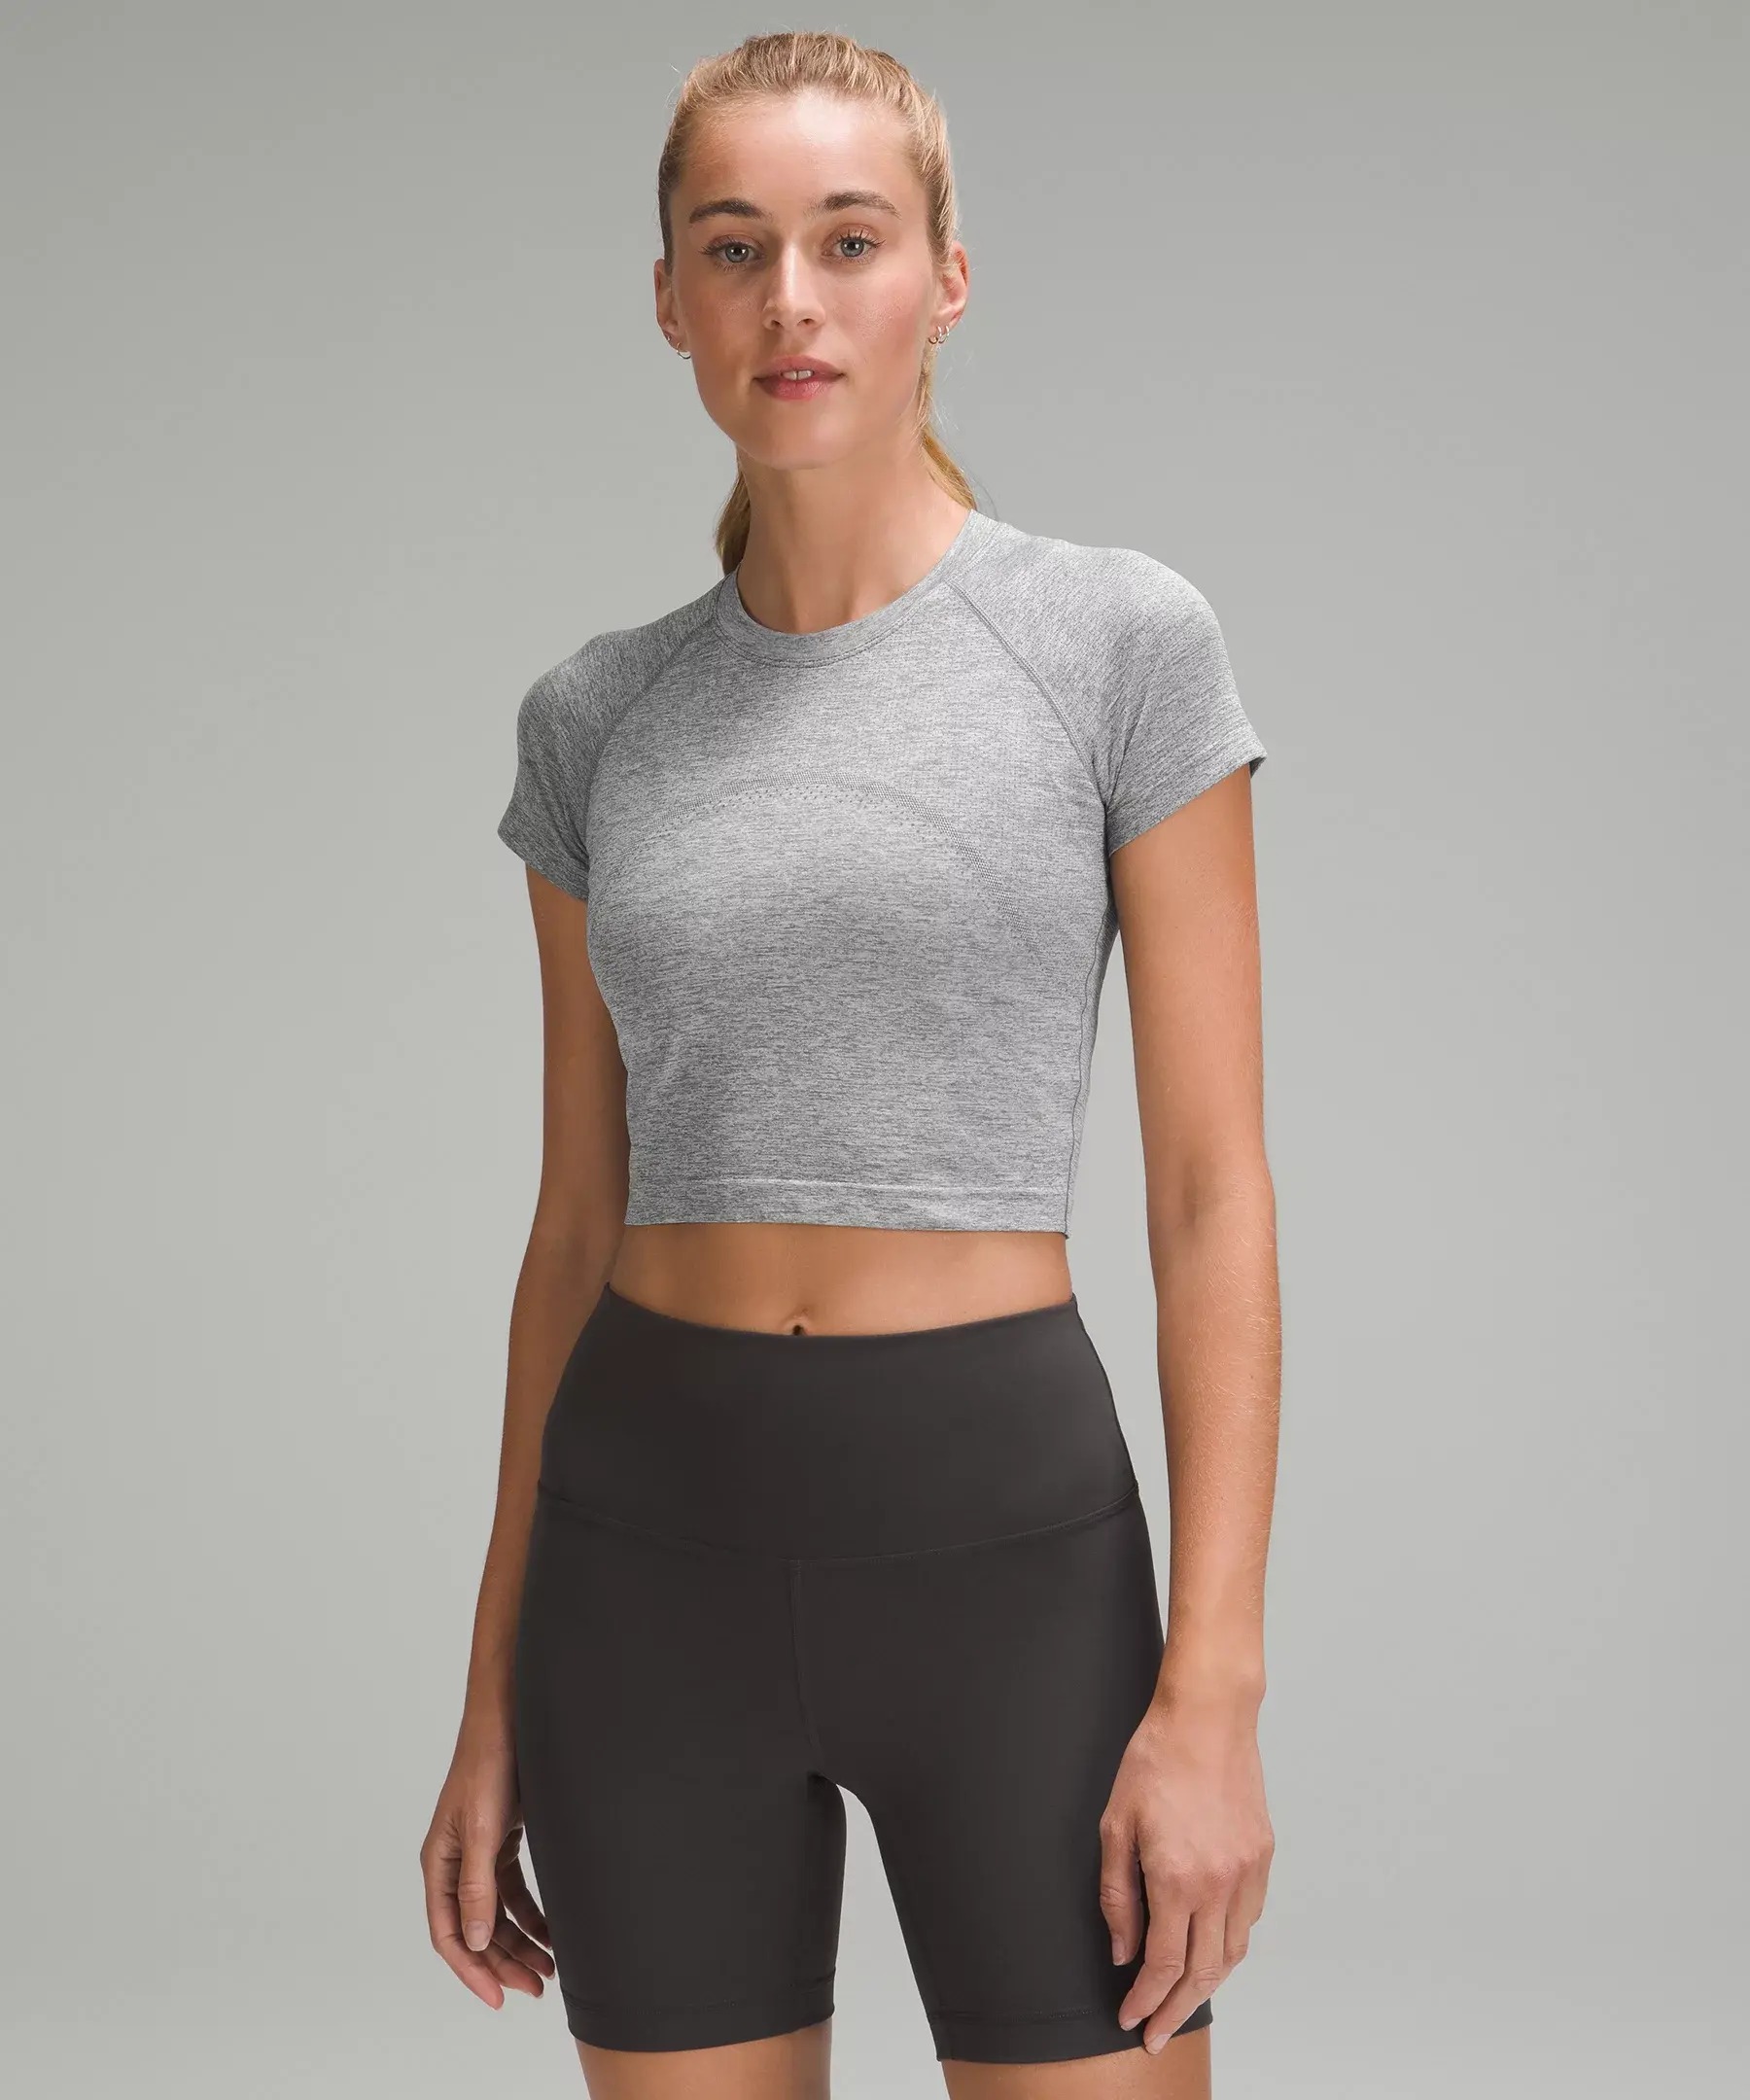 Lululemon Swiftly Tech Cropped Short-Sleeve Shirt 2.0. 1